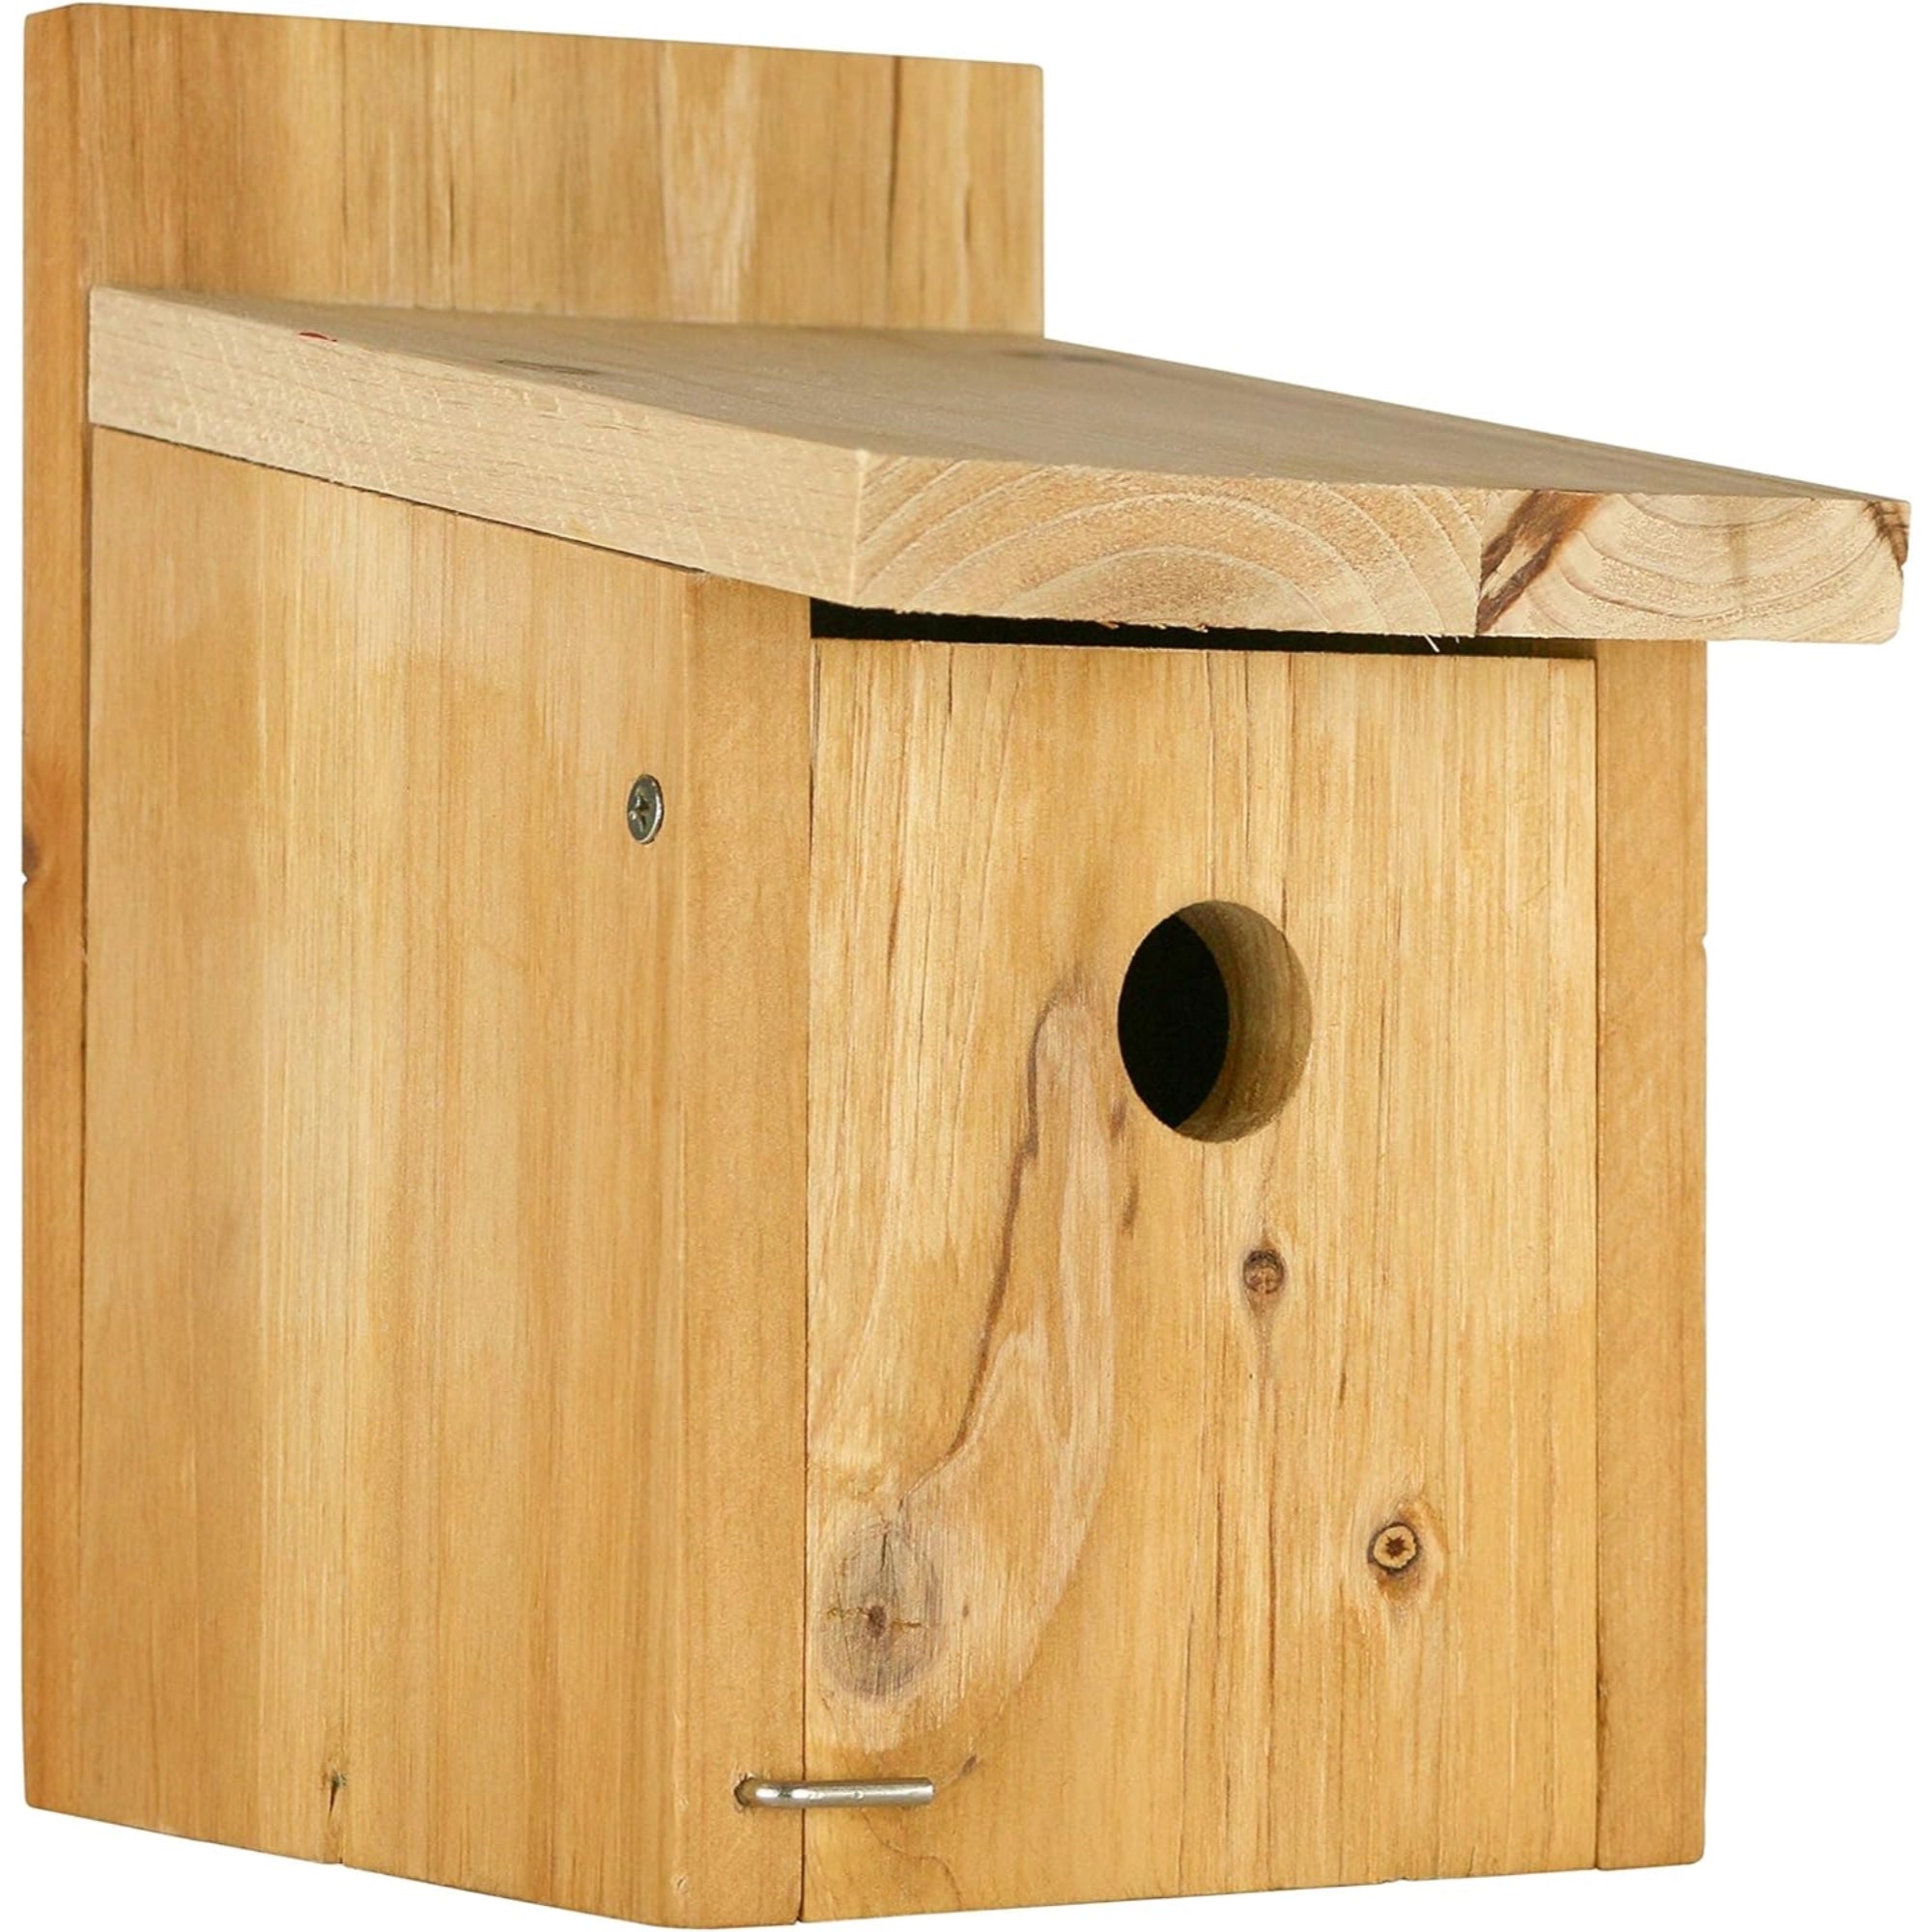 Wild Wings Cedar Box Wren Wild Bird Backyard House With Adjustable Door, Brown